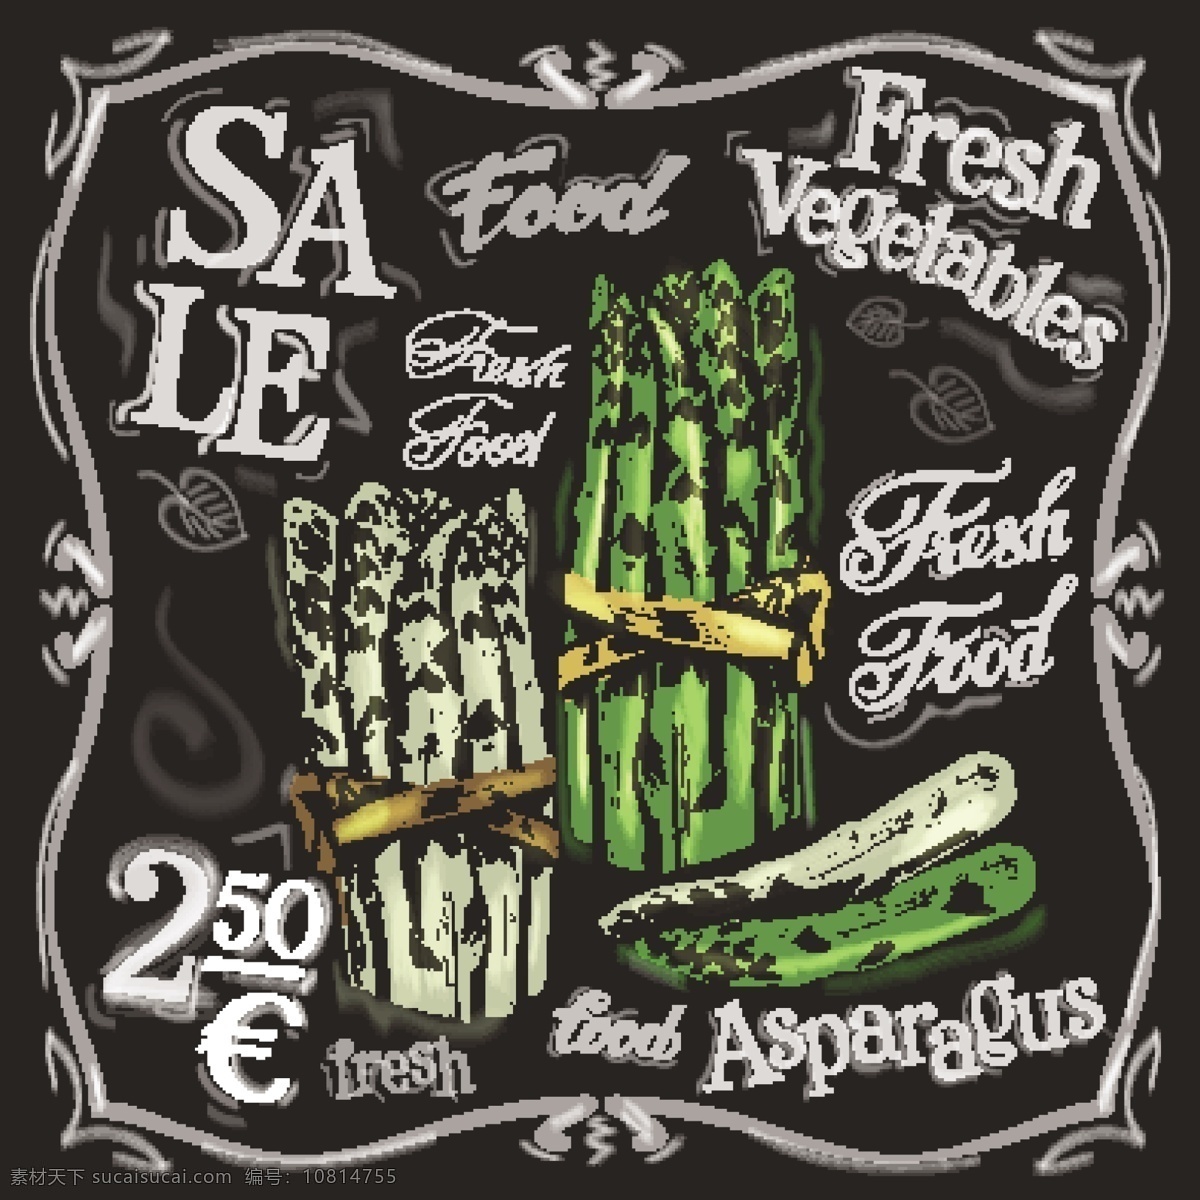 绿色 蔬菜 餐厅 装饰画 矢量 美食 黑板 手绘 英文 插画 线条 卡通 水果